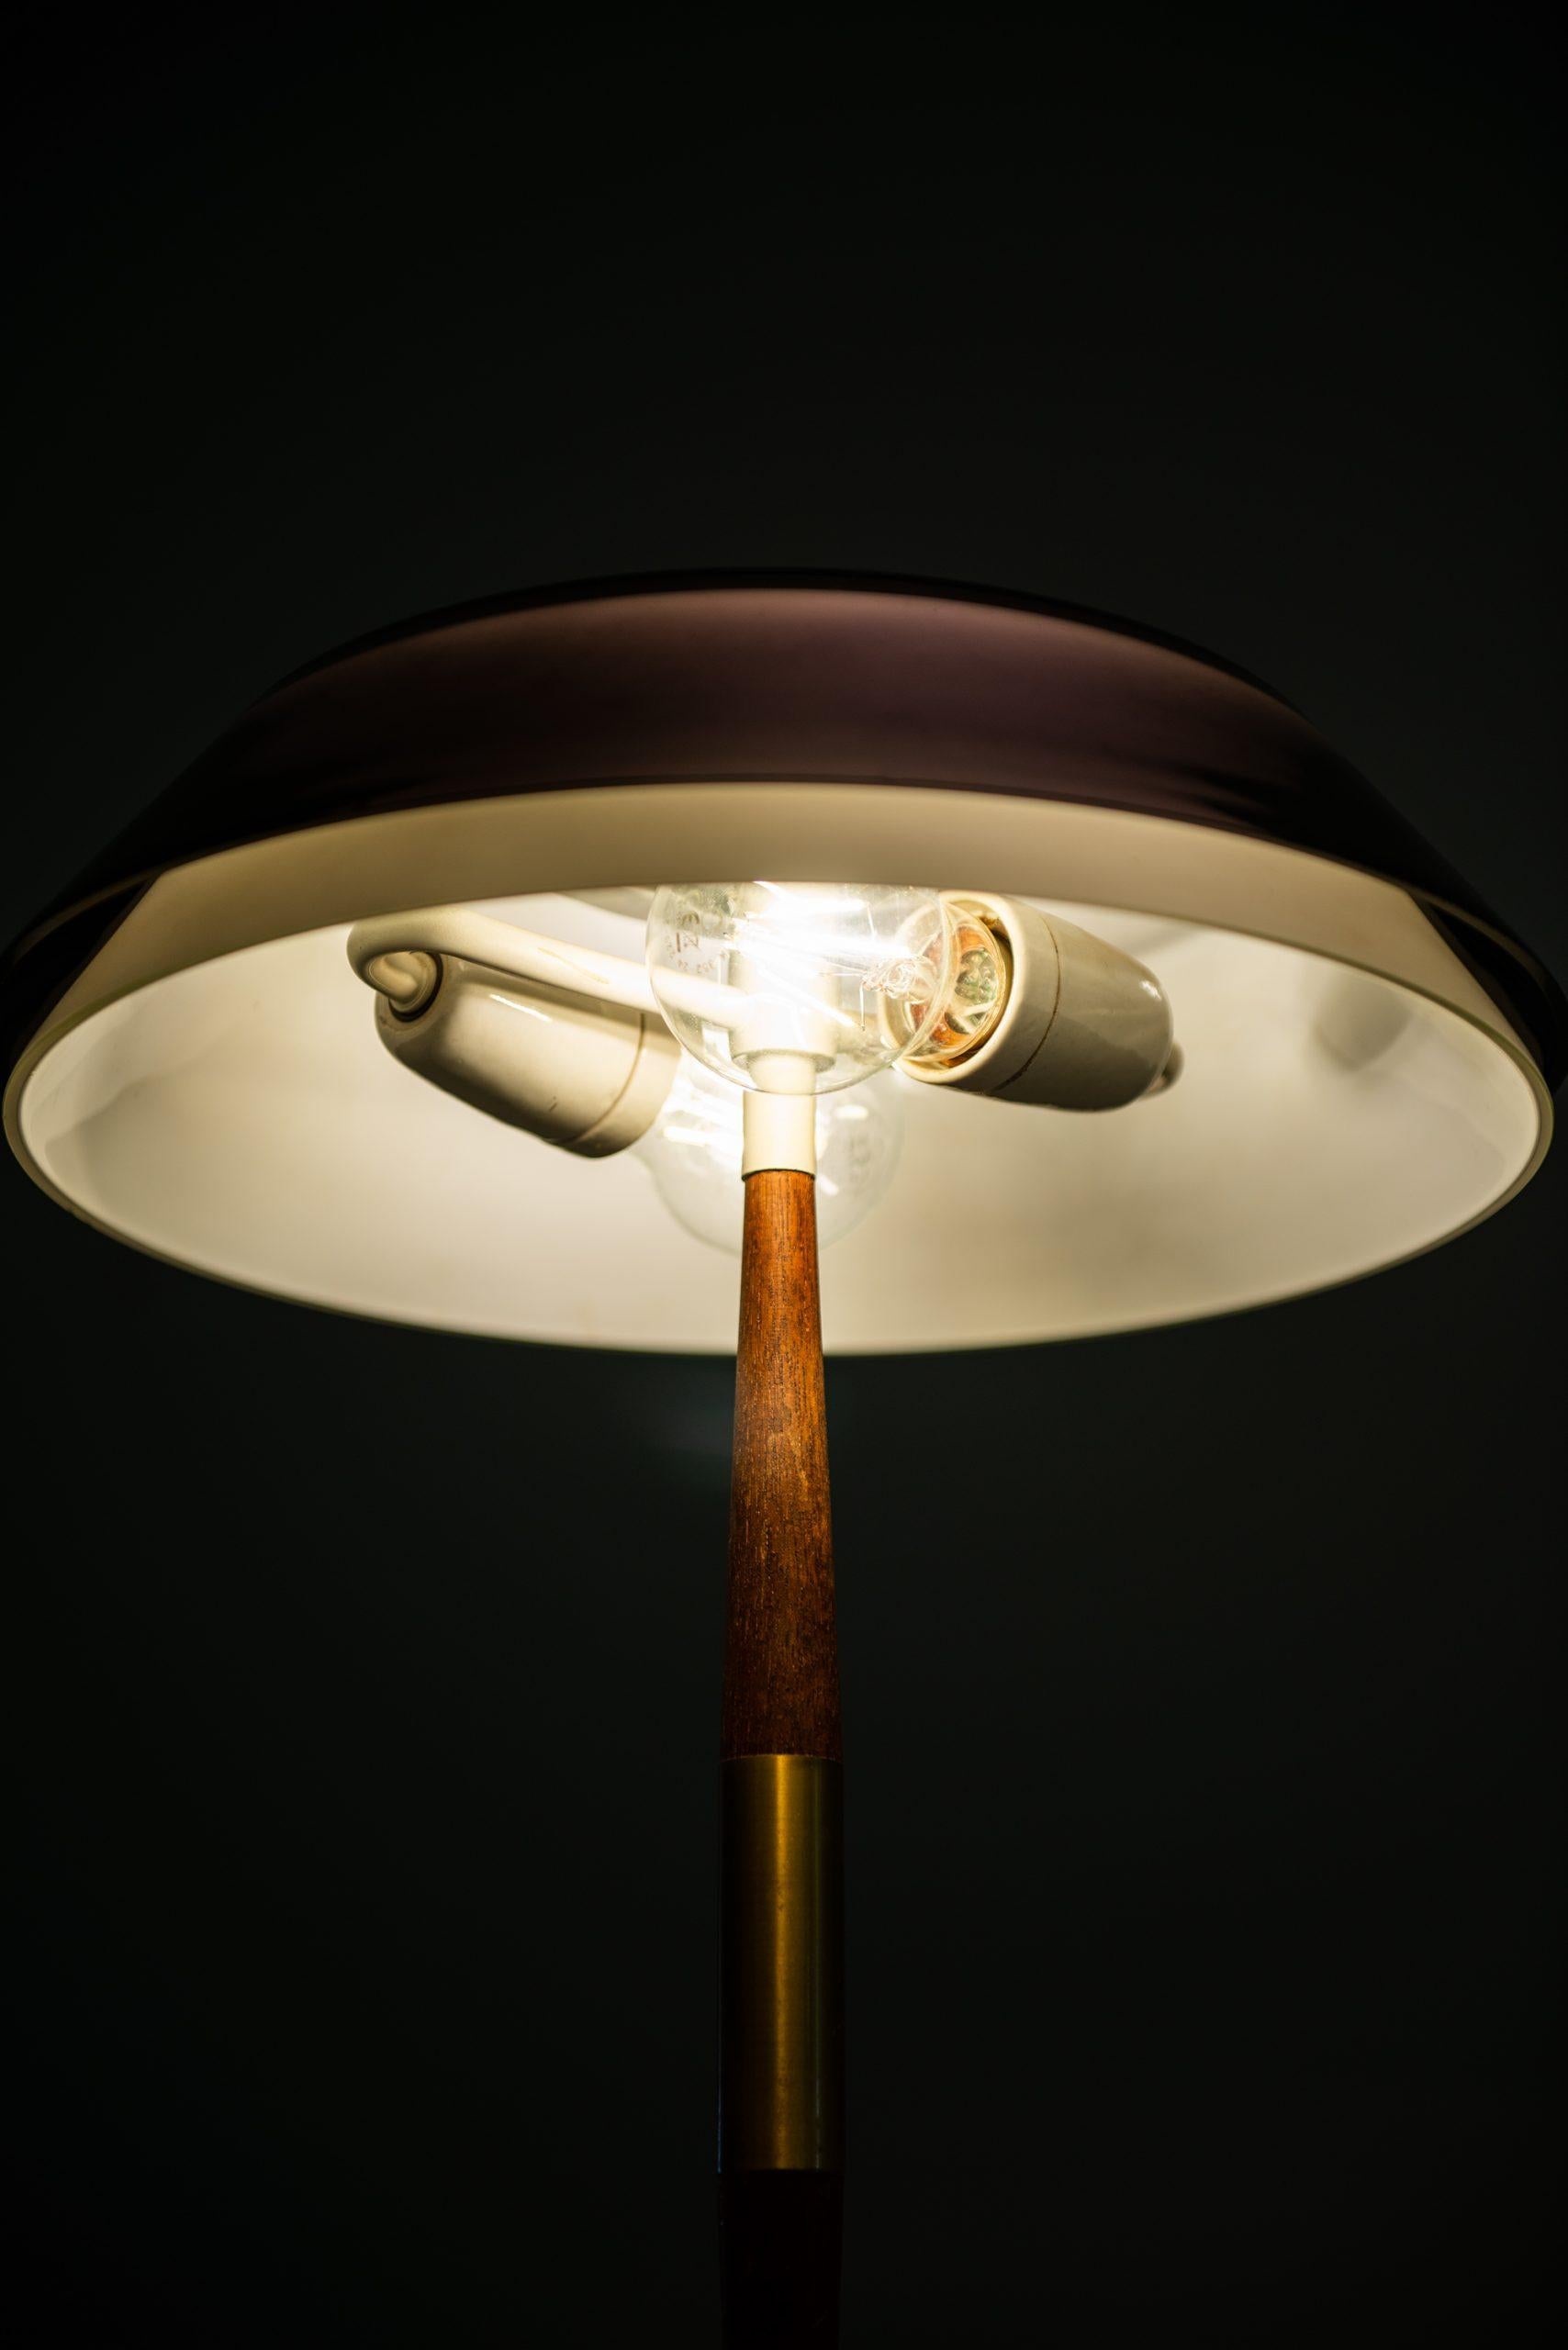 Mid-20th Century Jo Hammerborg Table Lamp Model Senior Produced by Fog & Mørup in Denmark